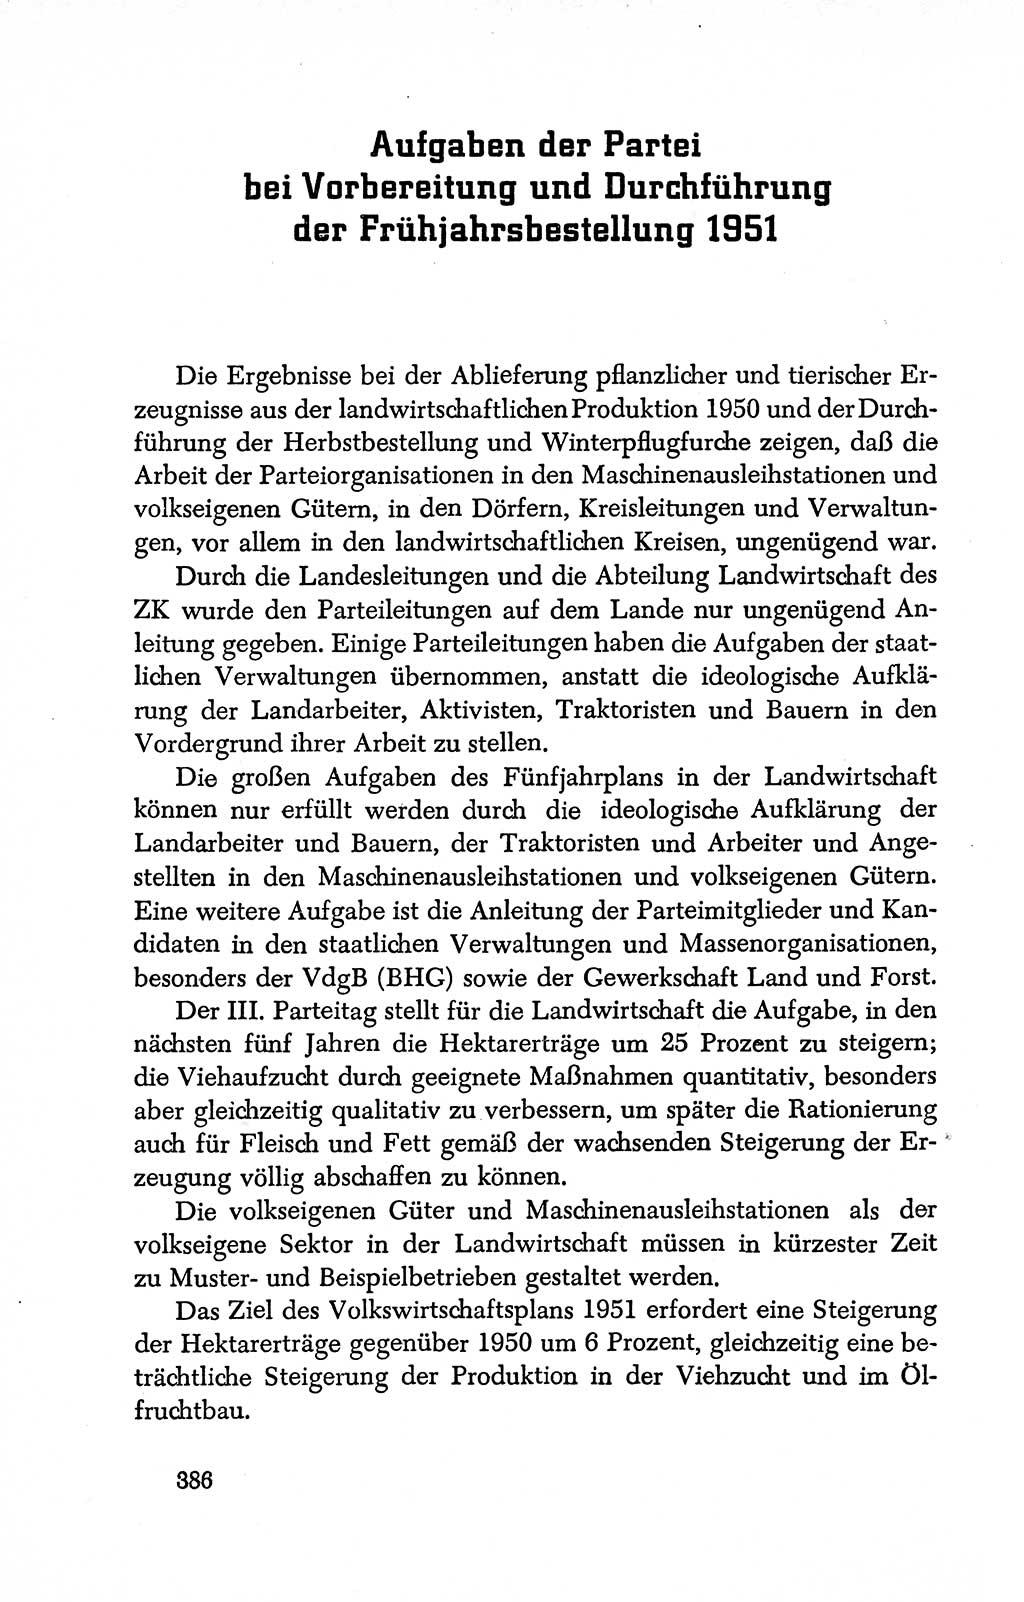 Dokumente der Sozialistischen Einheitspartei Deutschlands (SED) [Deutsche Demokratische Republik (DDR)] 1950-1952, Seite 386 (Dok. SED DDR 1950-1952, S. 386)